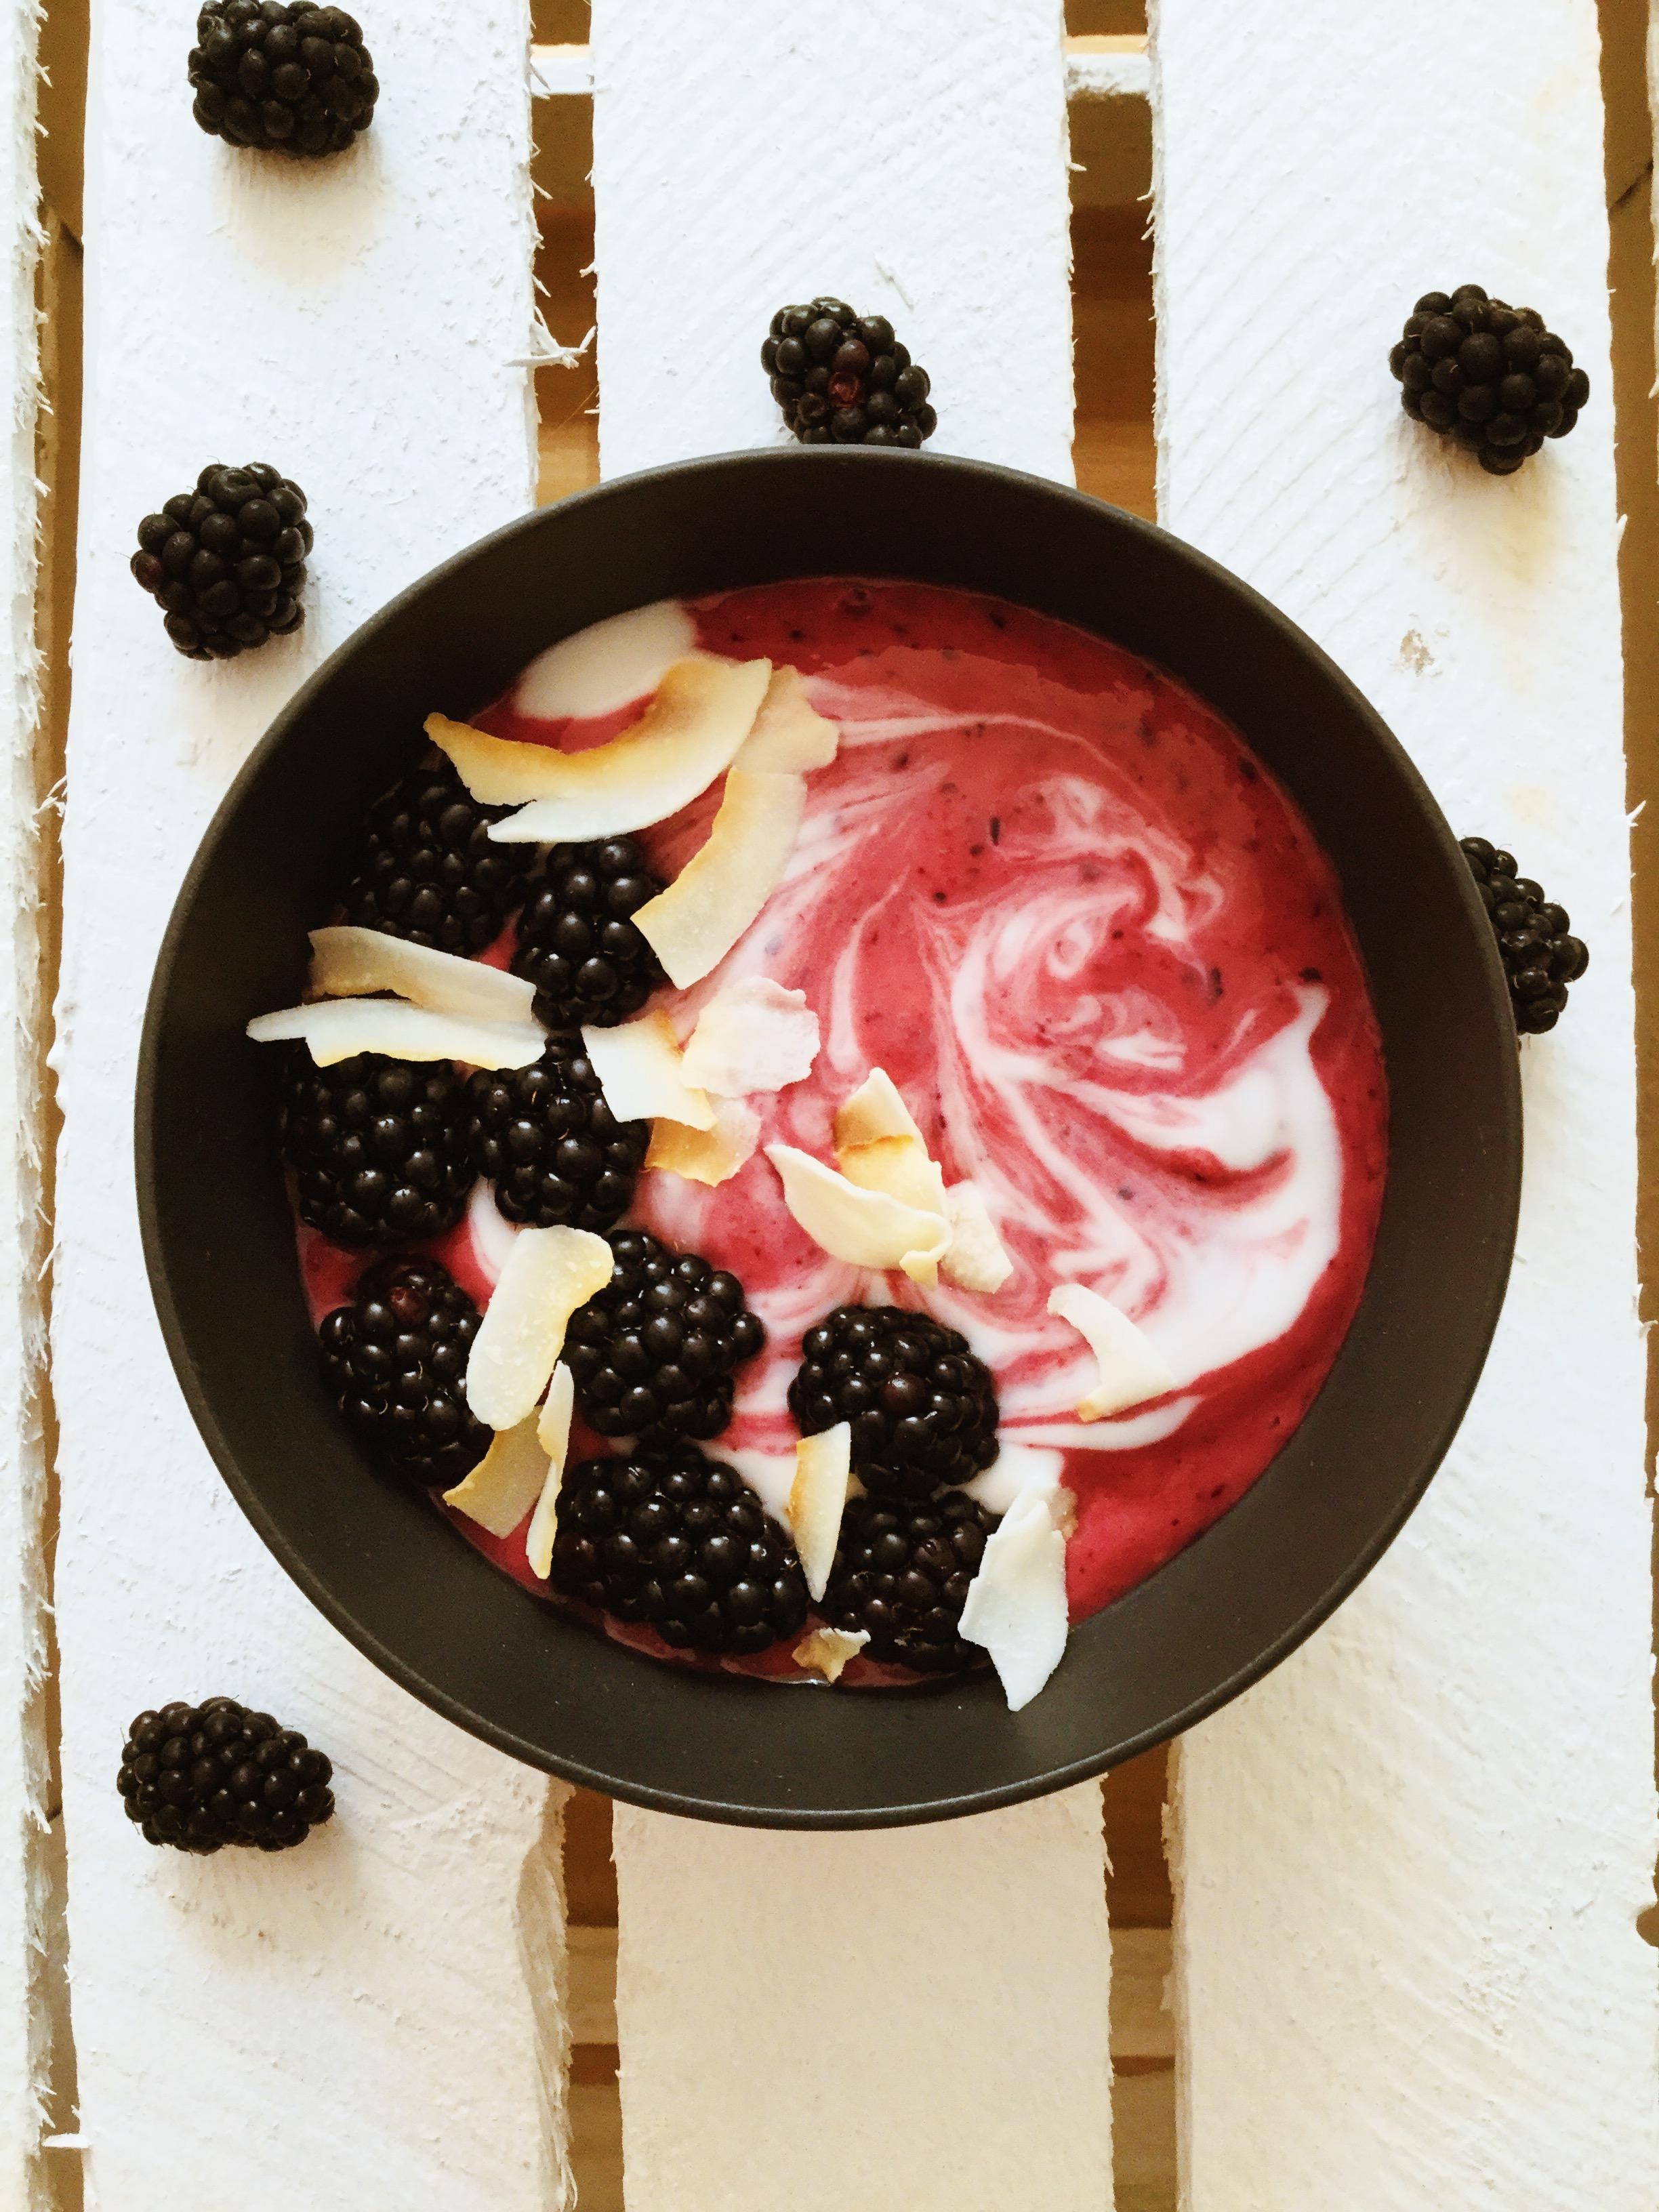 Brombeeren&Kokos 😋🌱🥥 perfekte Kombination #food #smoothiebowl #brombeeren #frühstück #foodbloggerslife #healthy #vegan